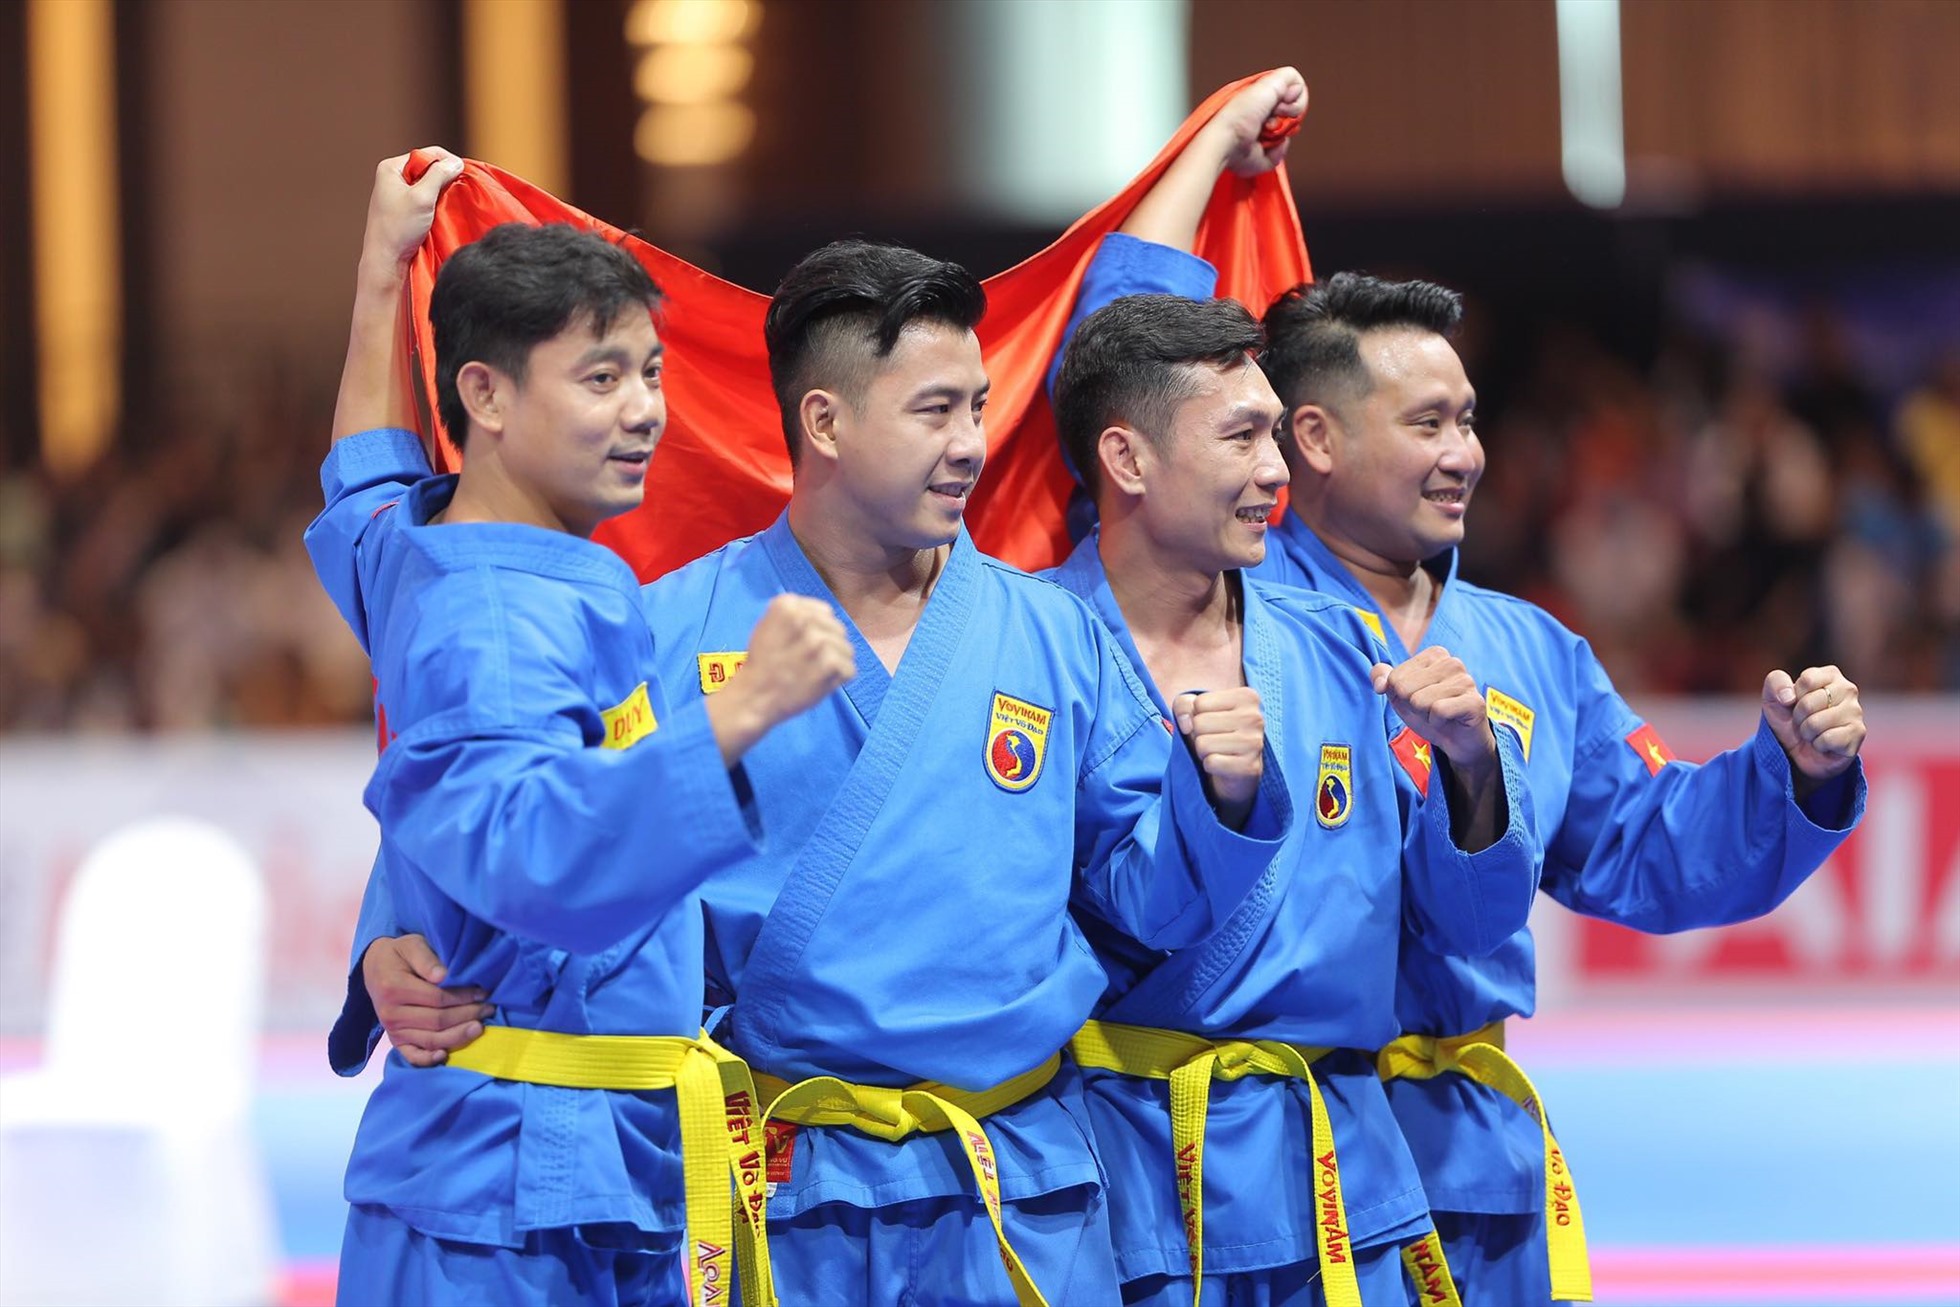 Đội tuyển Vovinam Việt Nam giành huy chương vàng Đa luyện vũ khí nam. Ảnh: Thanh Vũ